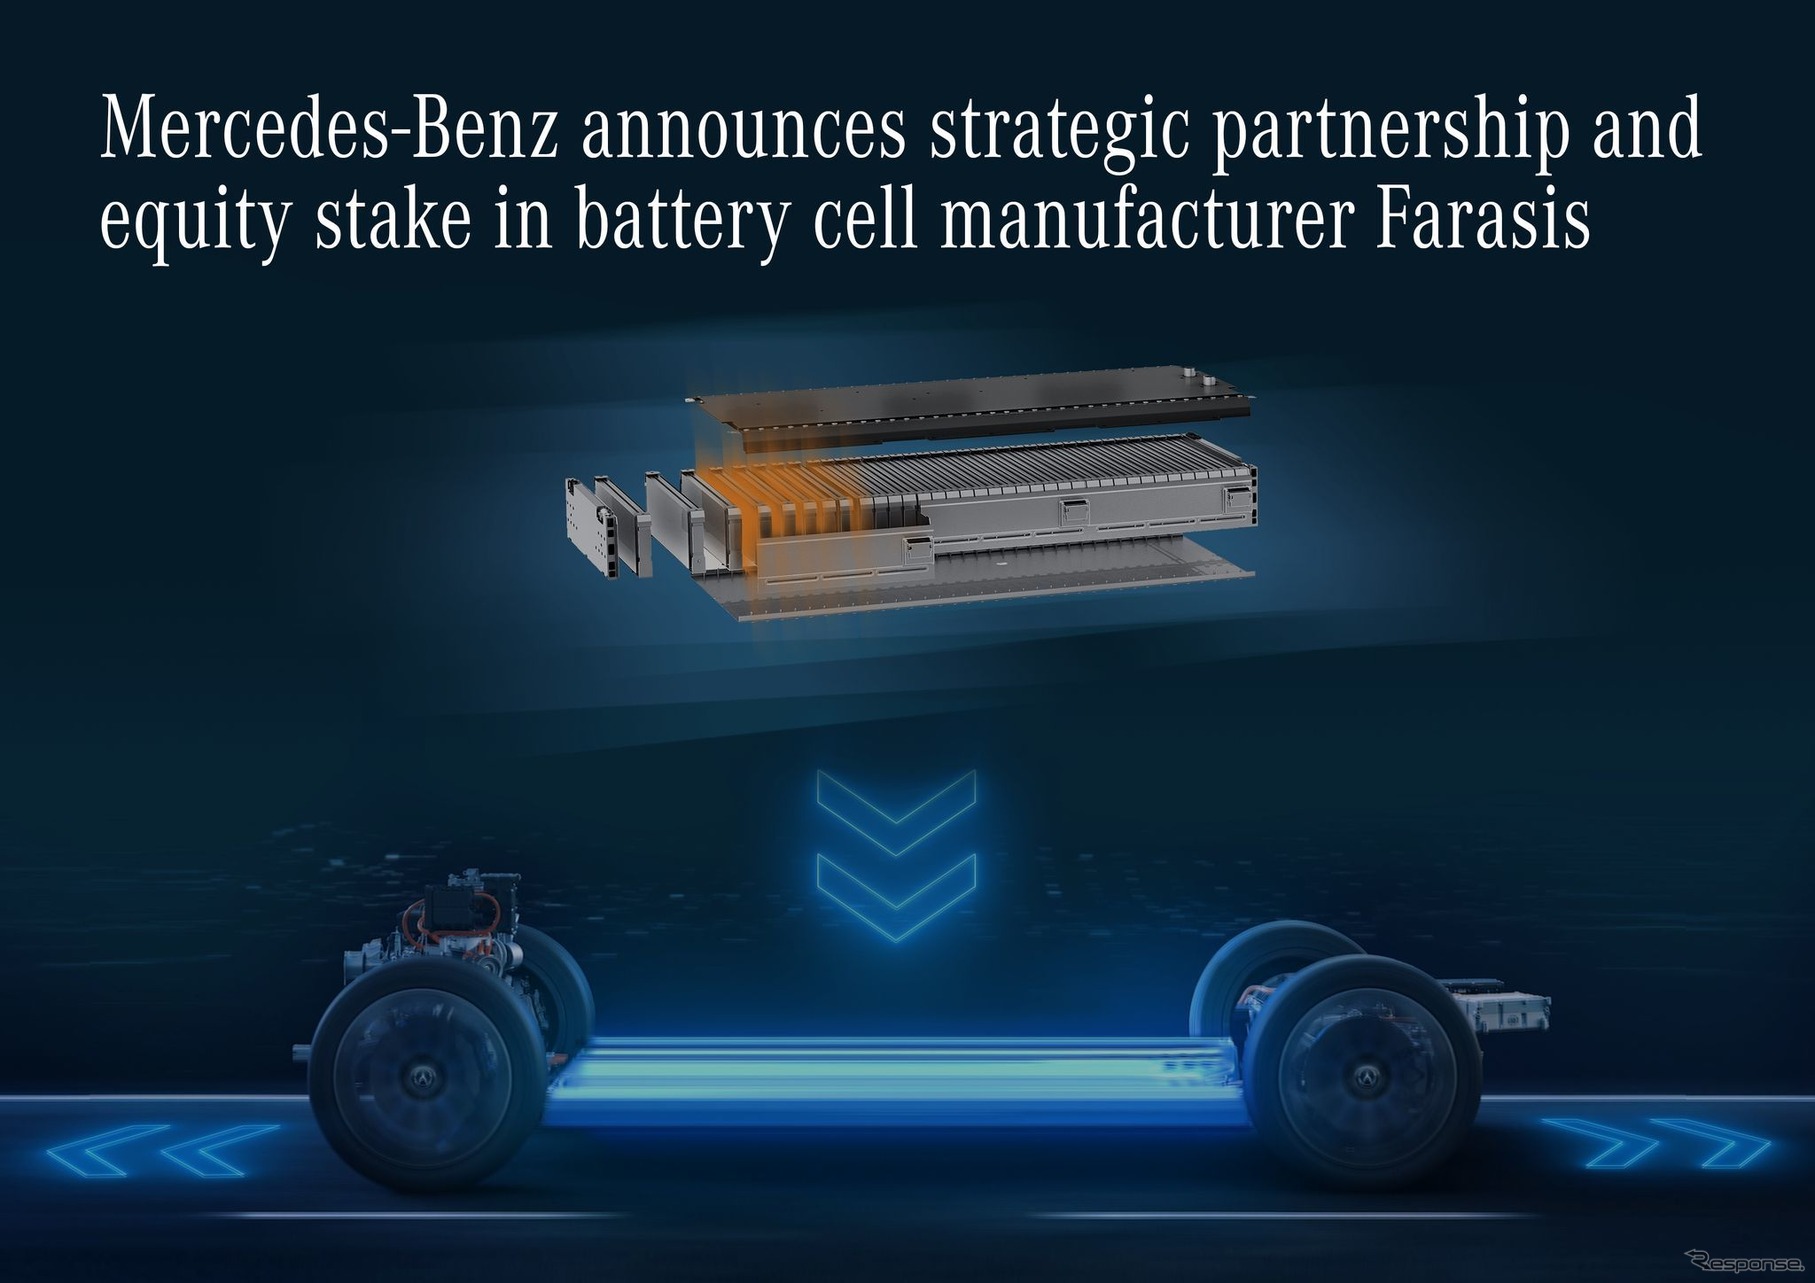 戦略的提携を締結することで合意したメルセデスベンツと中国のバッテリーメーカーのファラシス・エナジー社